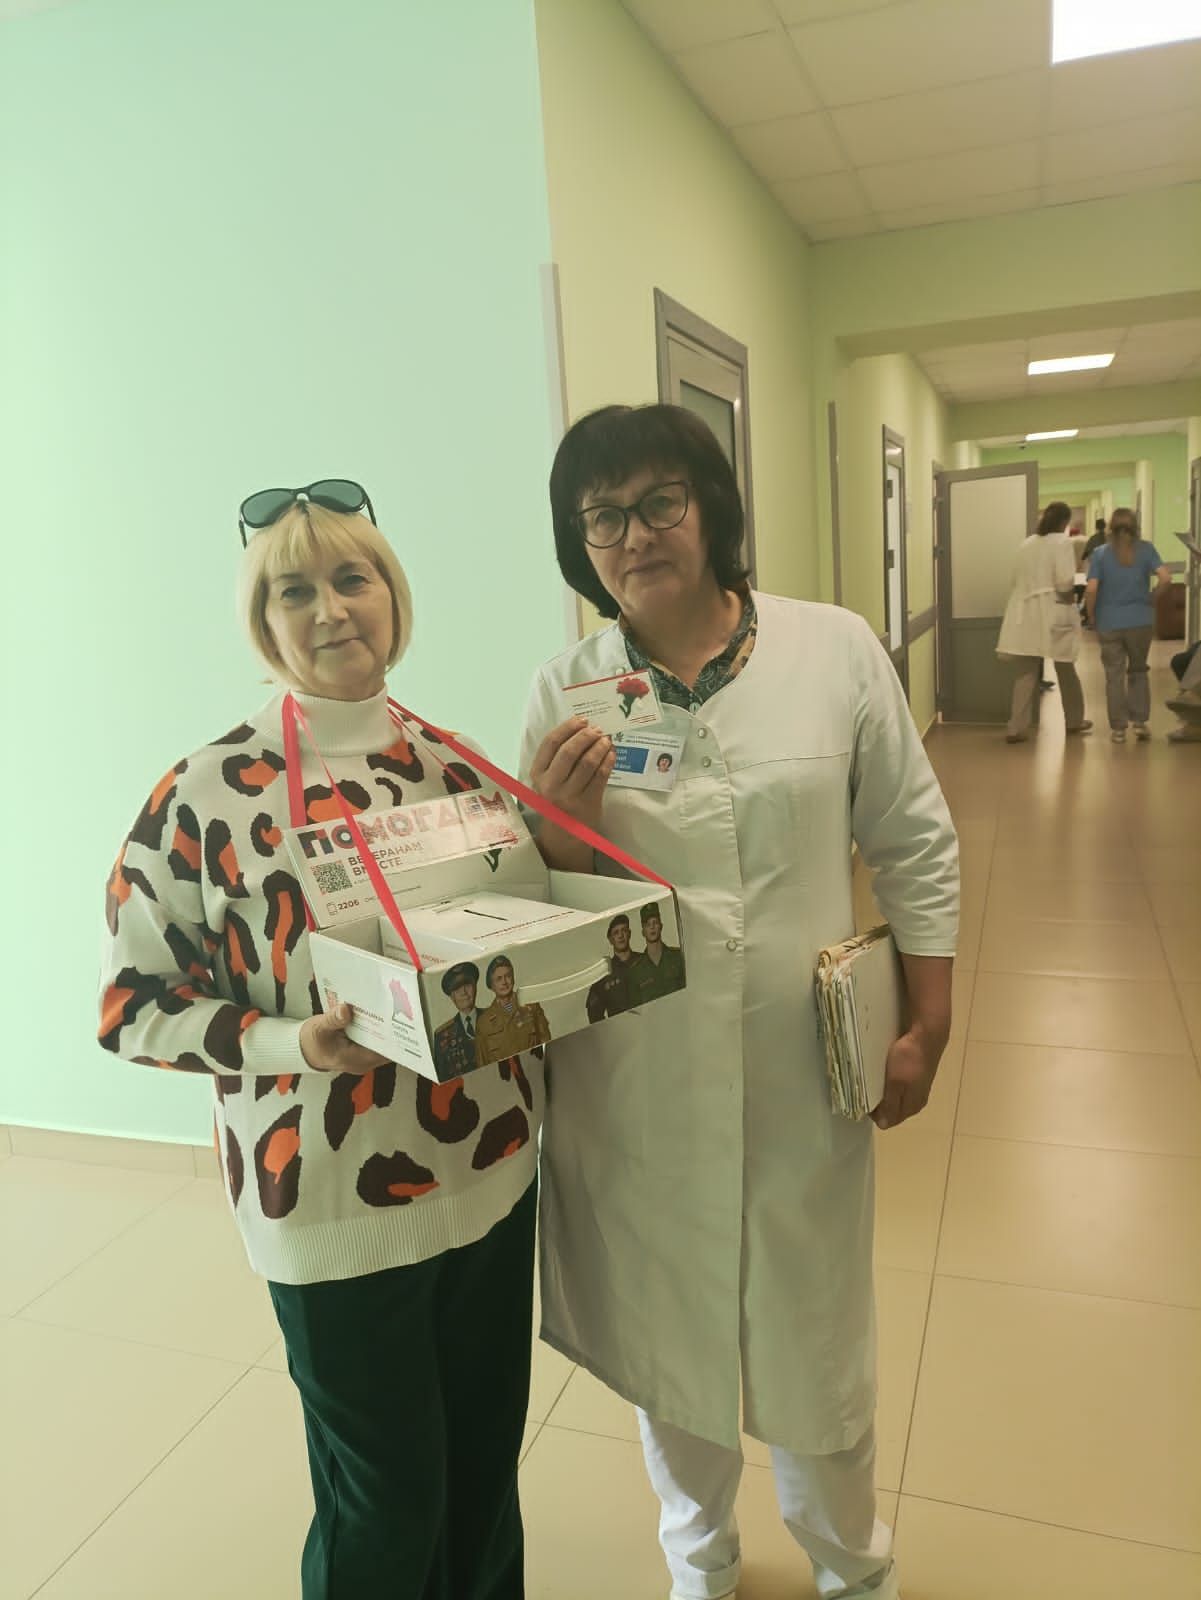 Коллектив Центральной районной больницы принял участие в акции "Красная гвоздика"